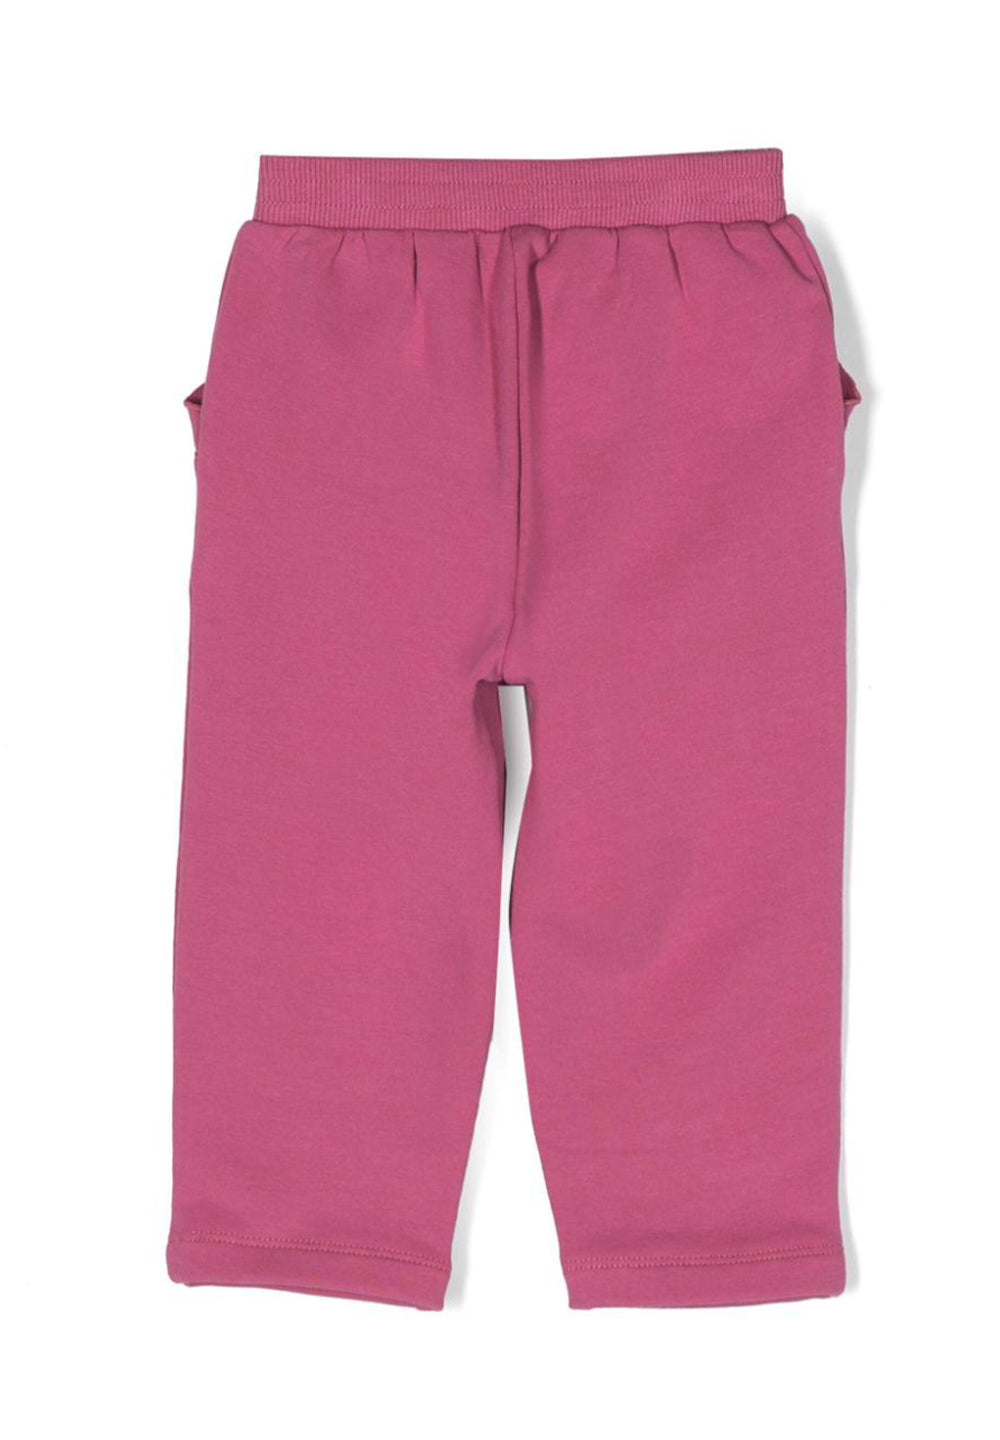 Fuchsia fleece trousers for baby girl